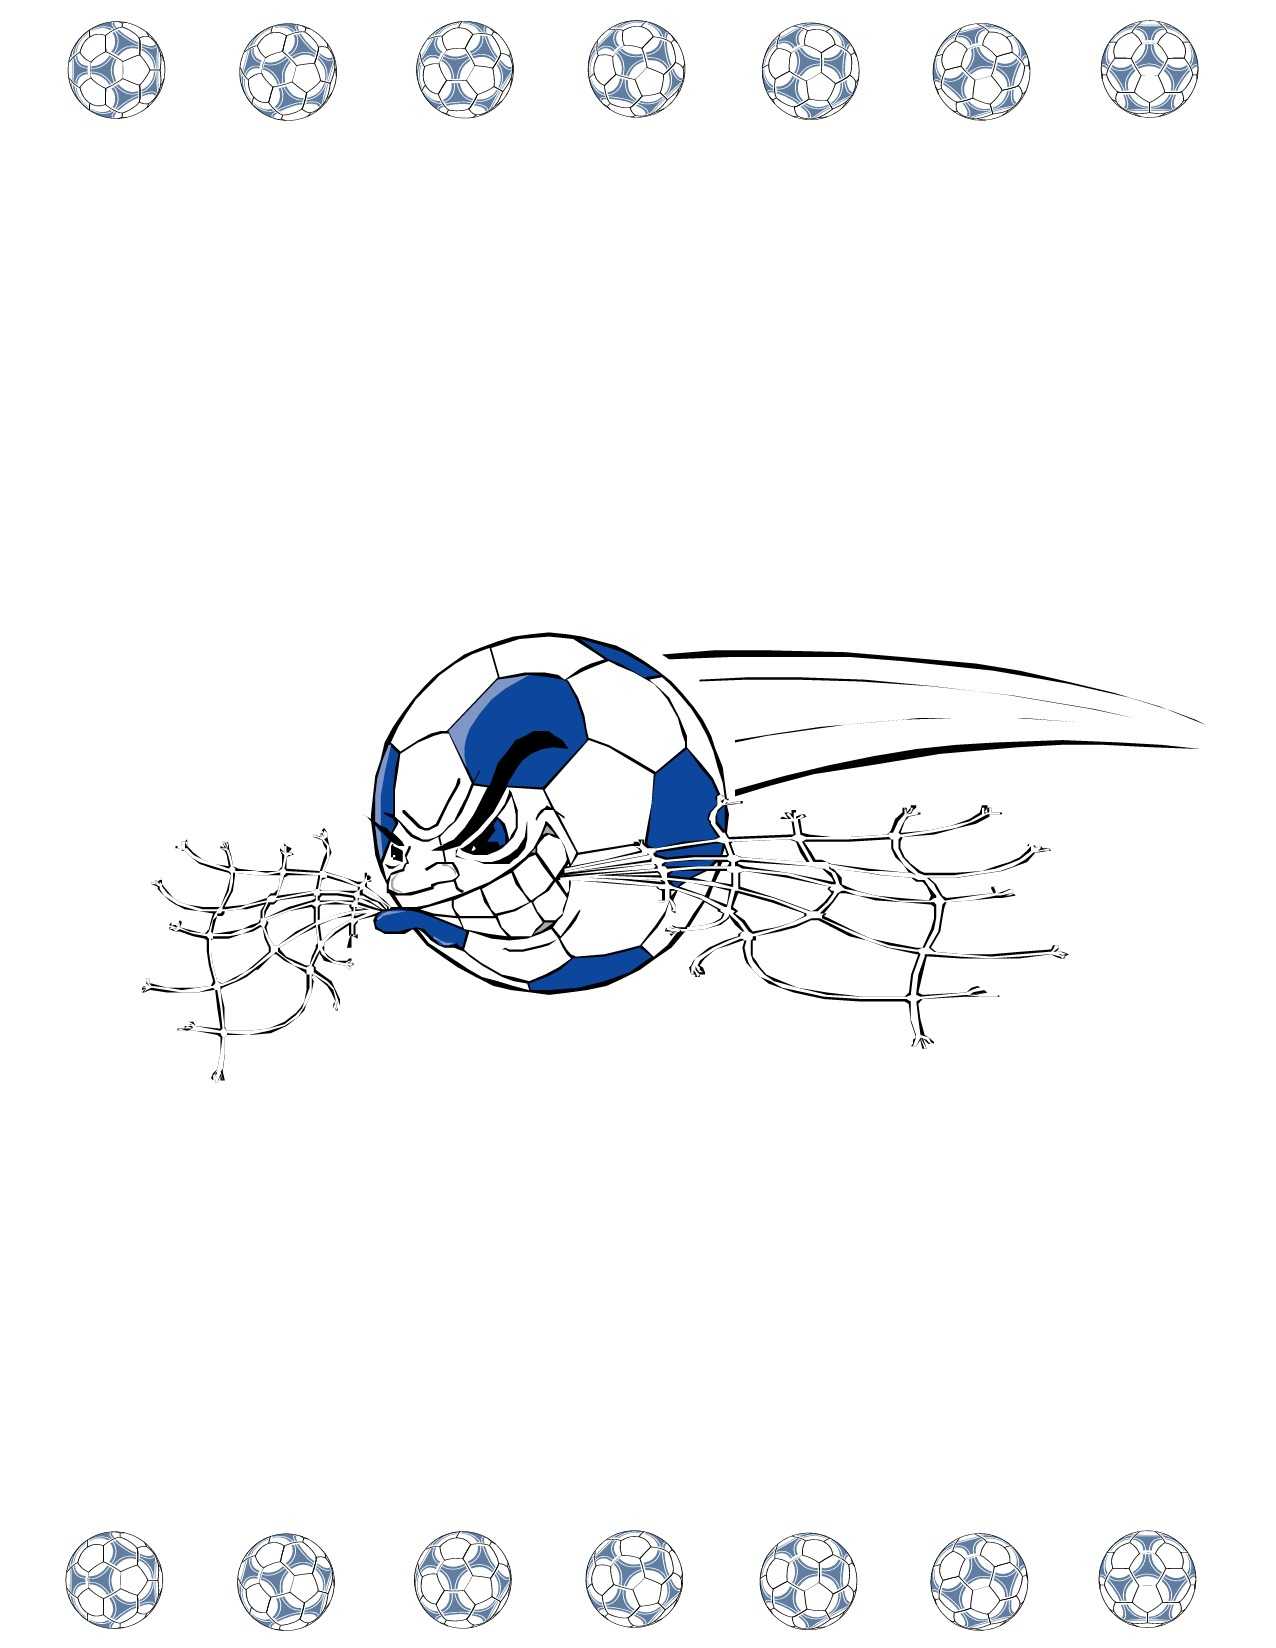 Soccer Award Certificate Maker: Make Personalized Soccer Awards With Regard To Soccer Award Certificate Template